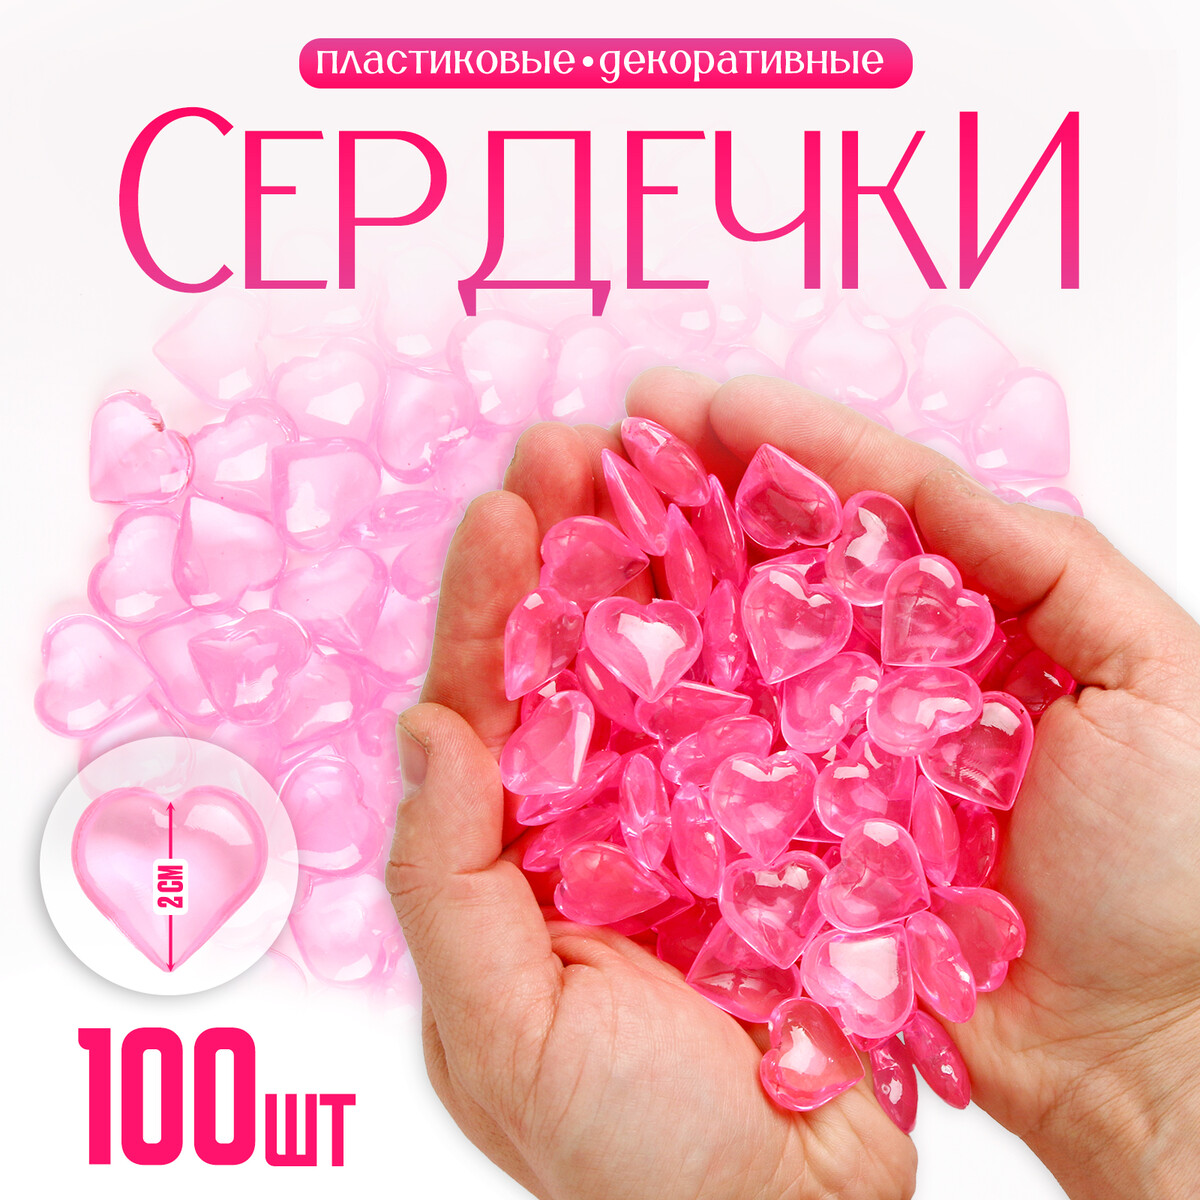 Сердечки пластиковые декоративные, набор 100 шт., размер 1 шт. — 2 × 2 см, цвет розовый декоративные элементы для декора объемные 12 ячеек розовый красный